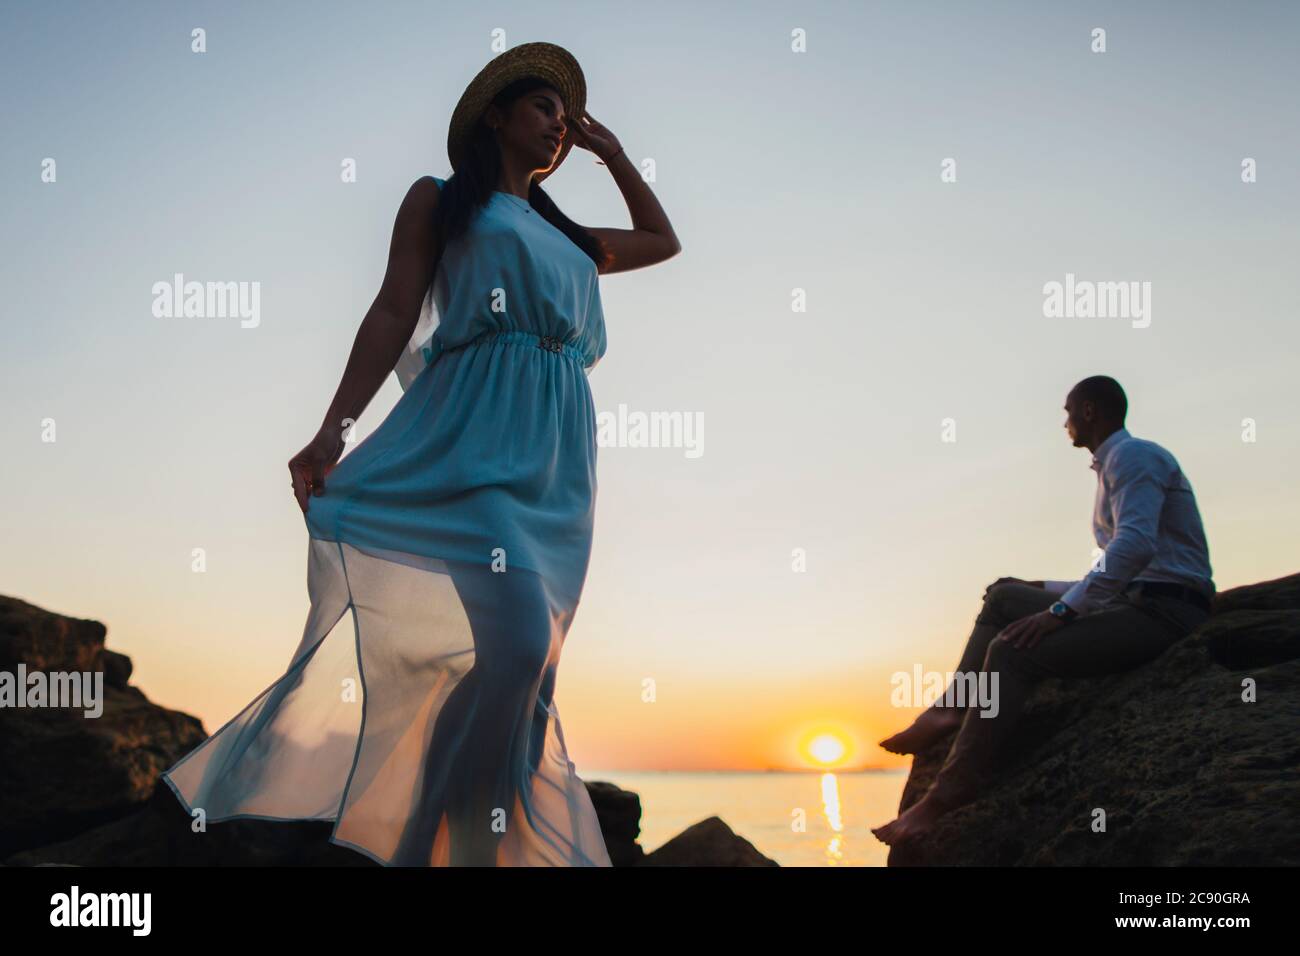 Romantic couple on beach at sunset Stock Photo